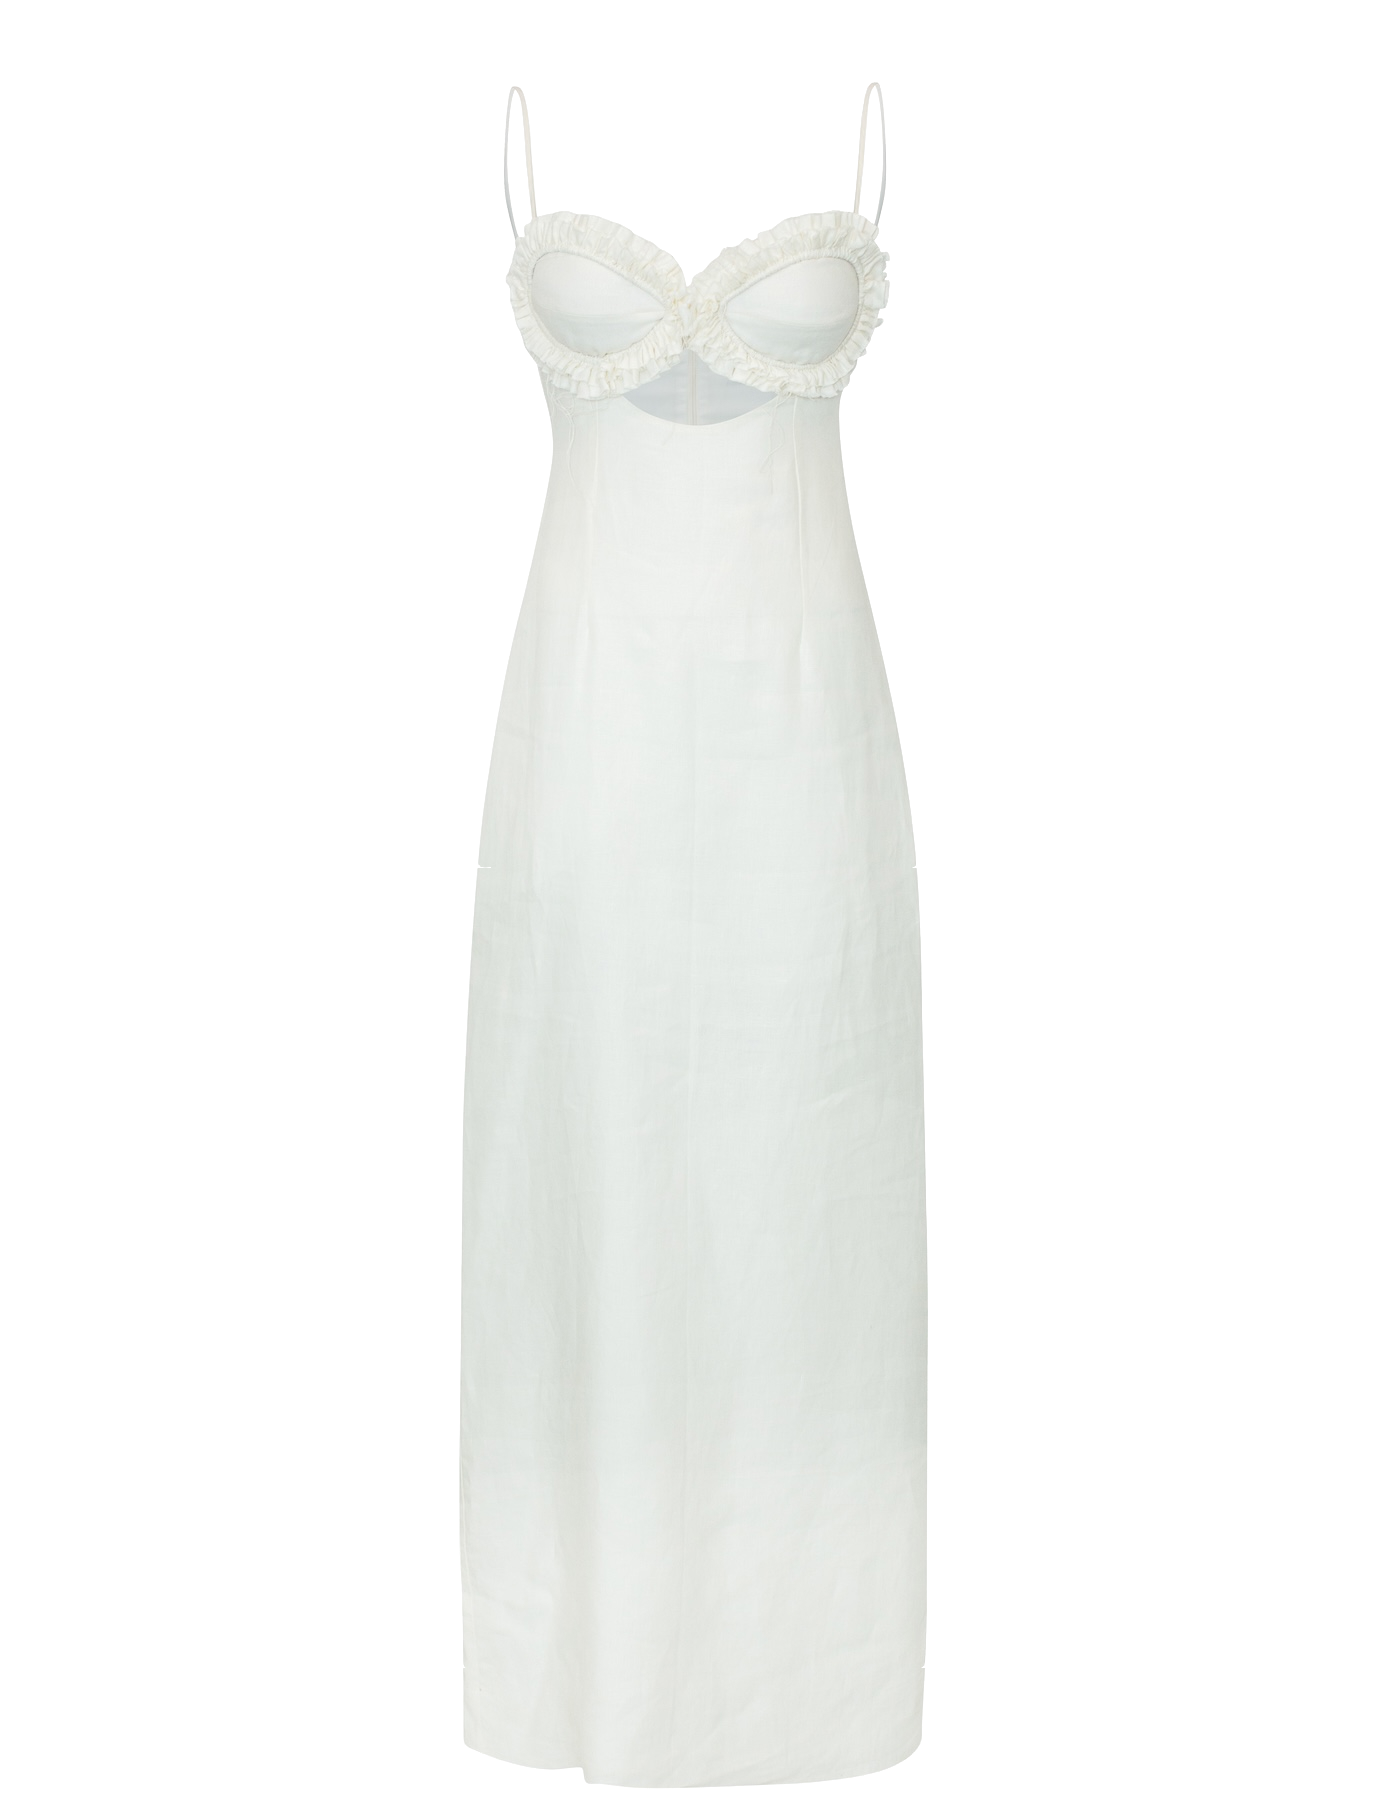 SARAH White Linen Dress With Ruffles von MAET